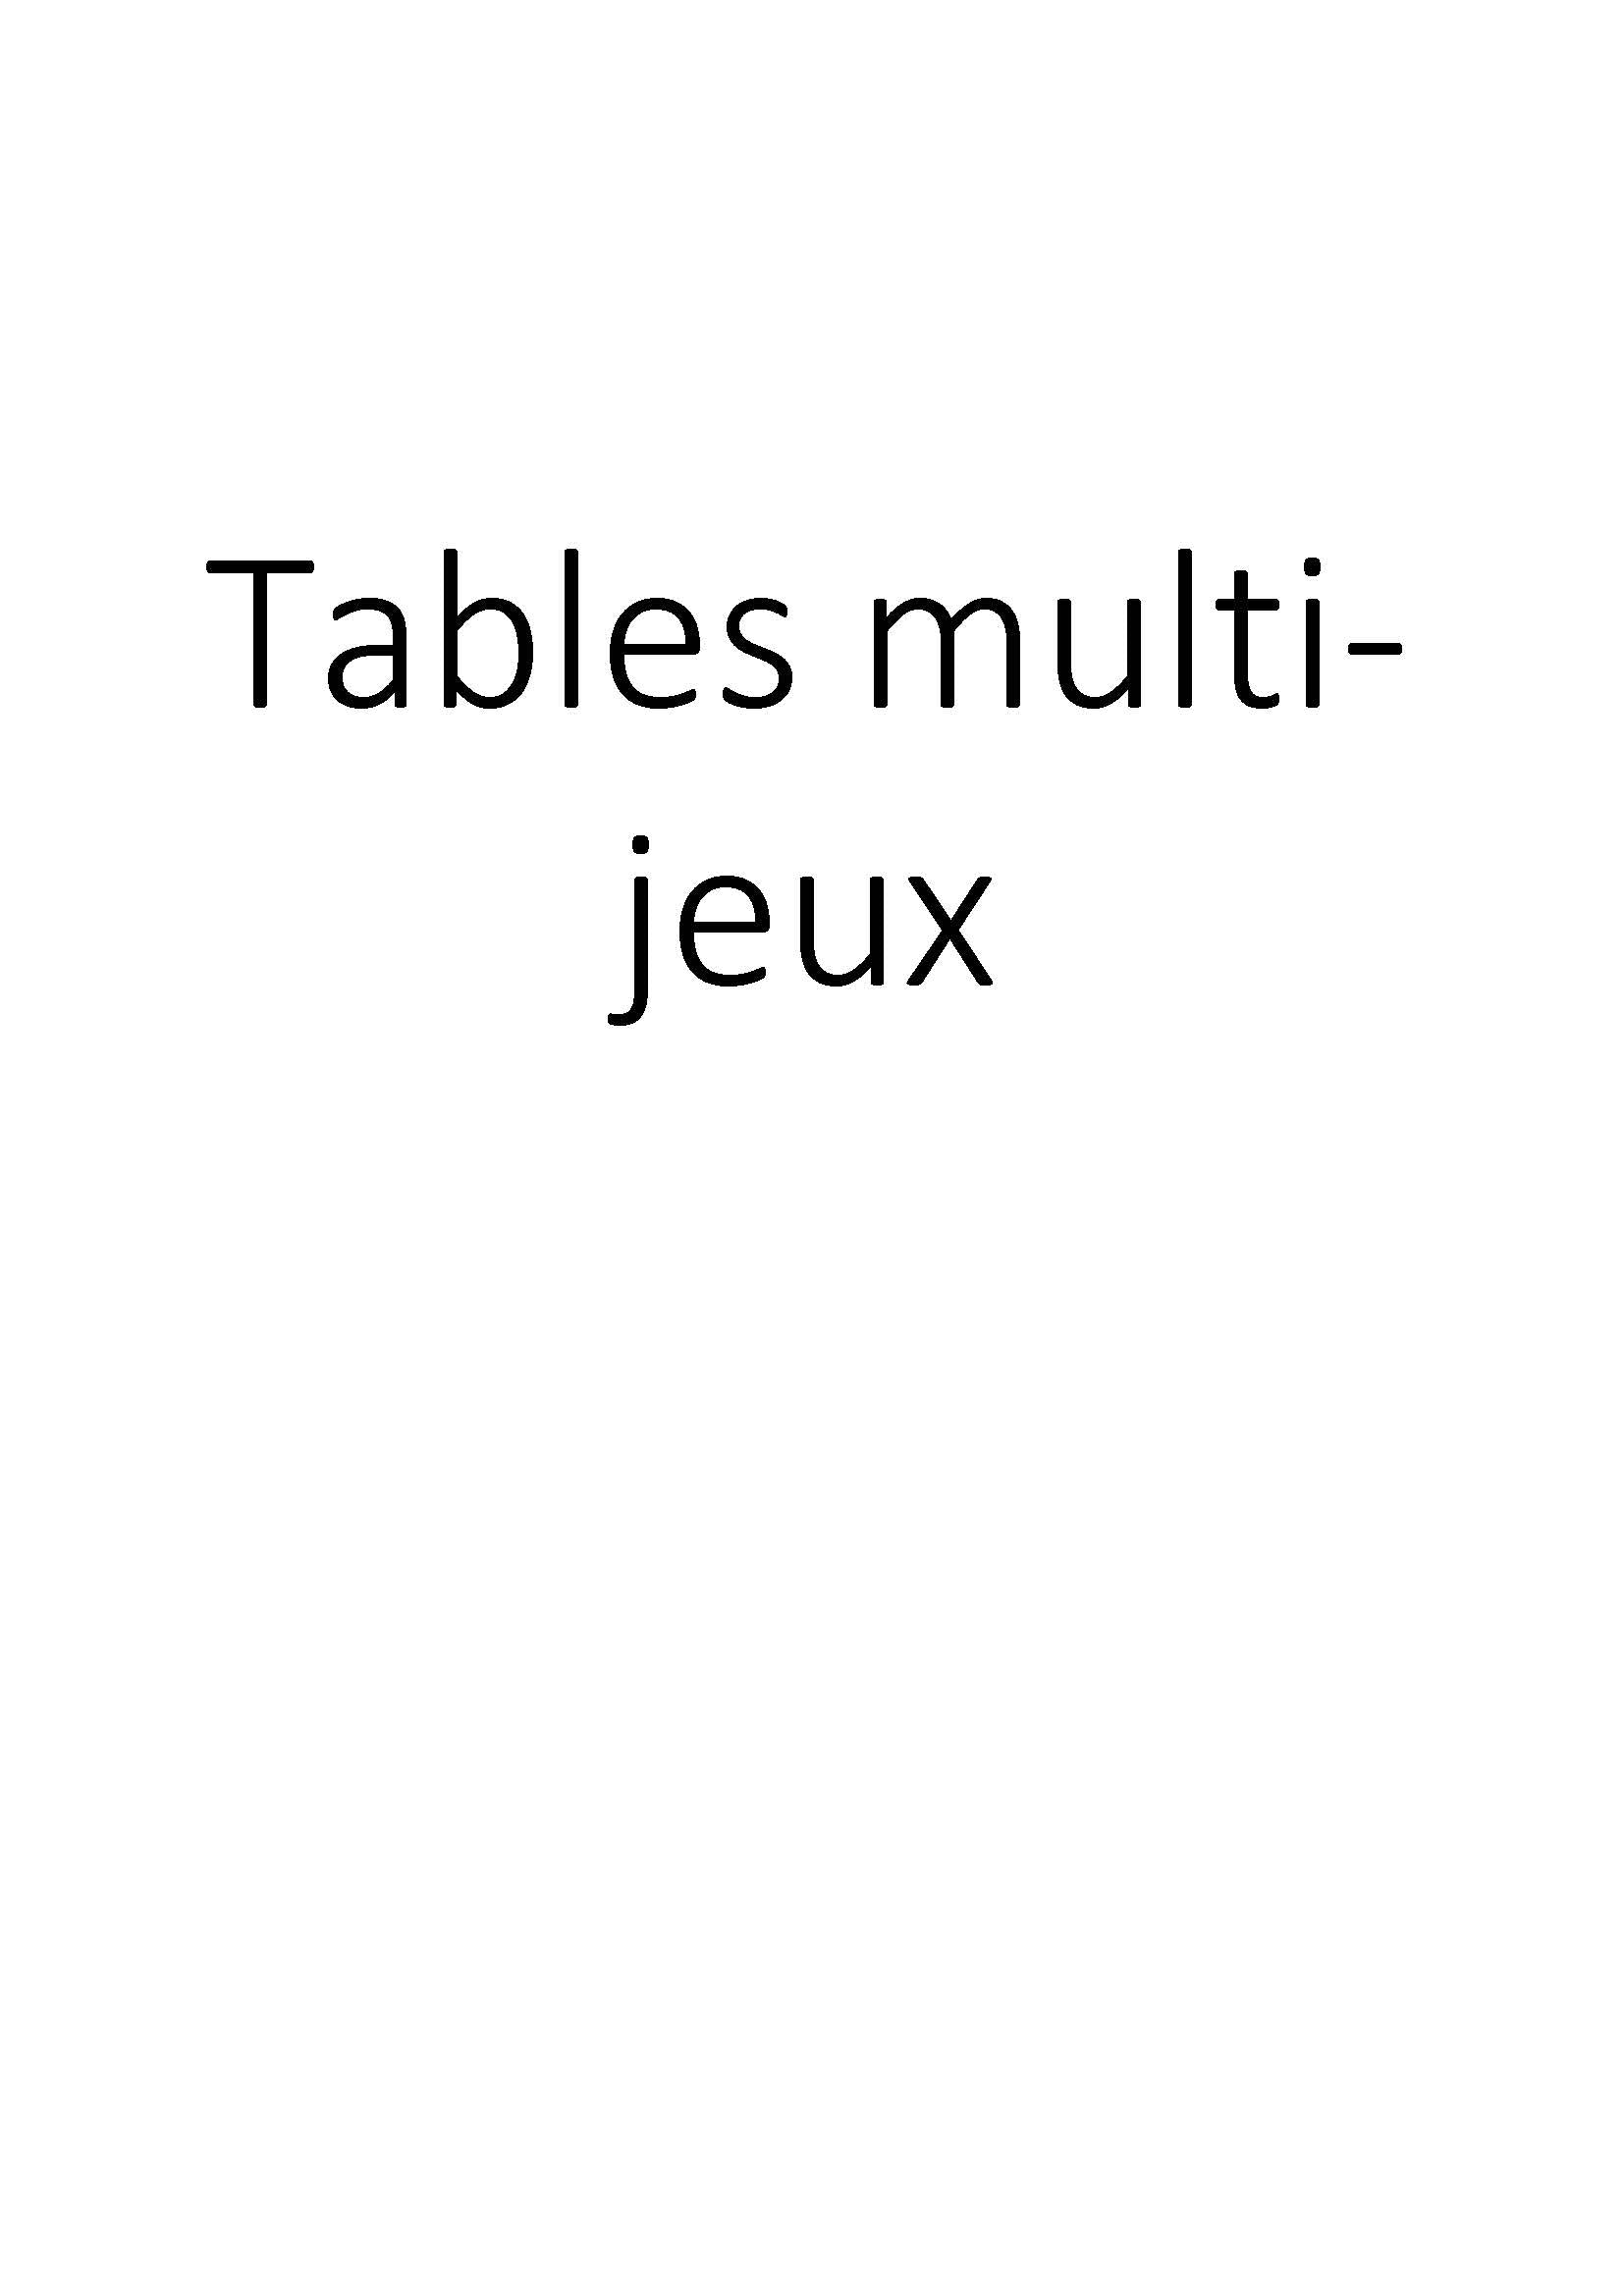 Tables multi-jeux clicktofournisseur.com